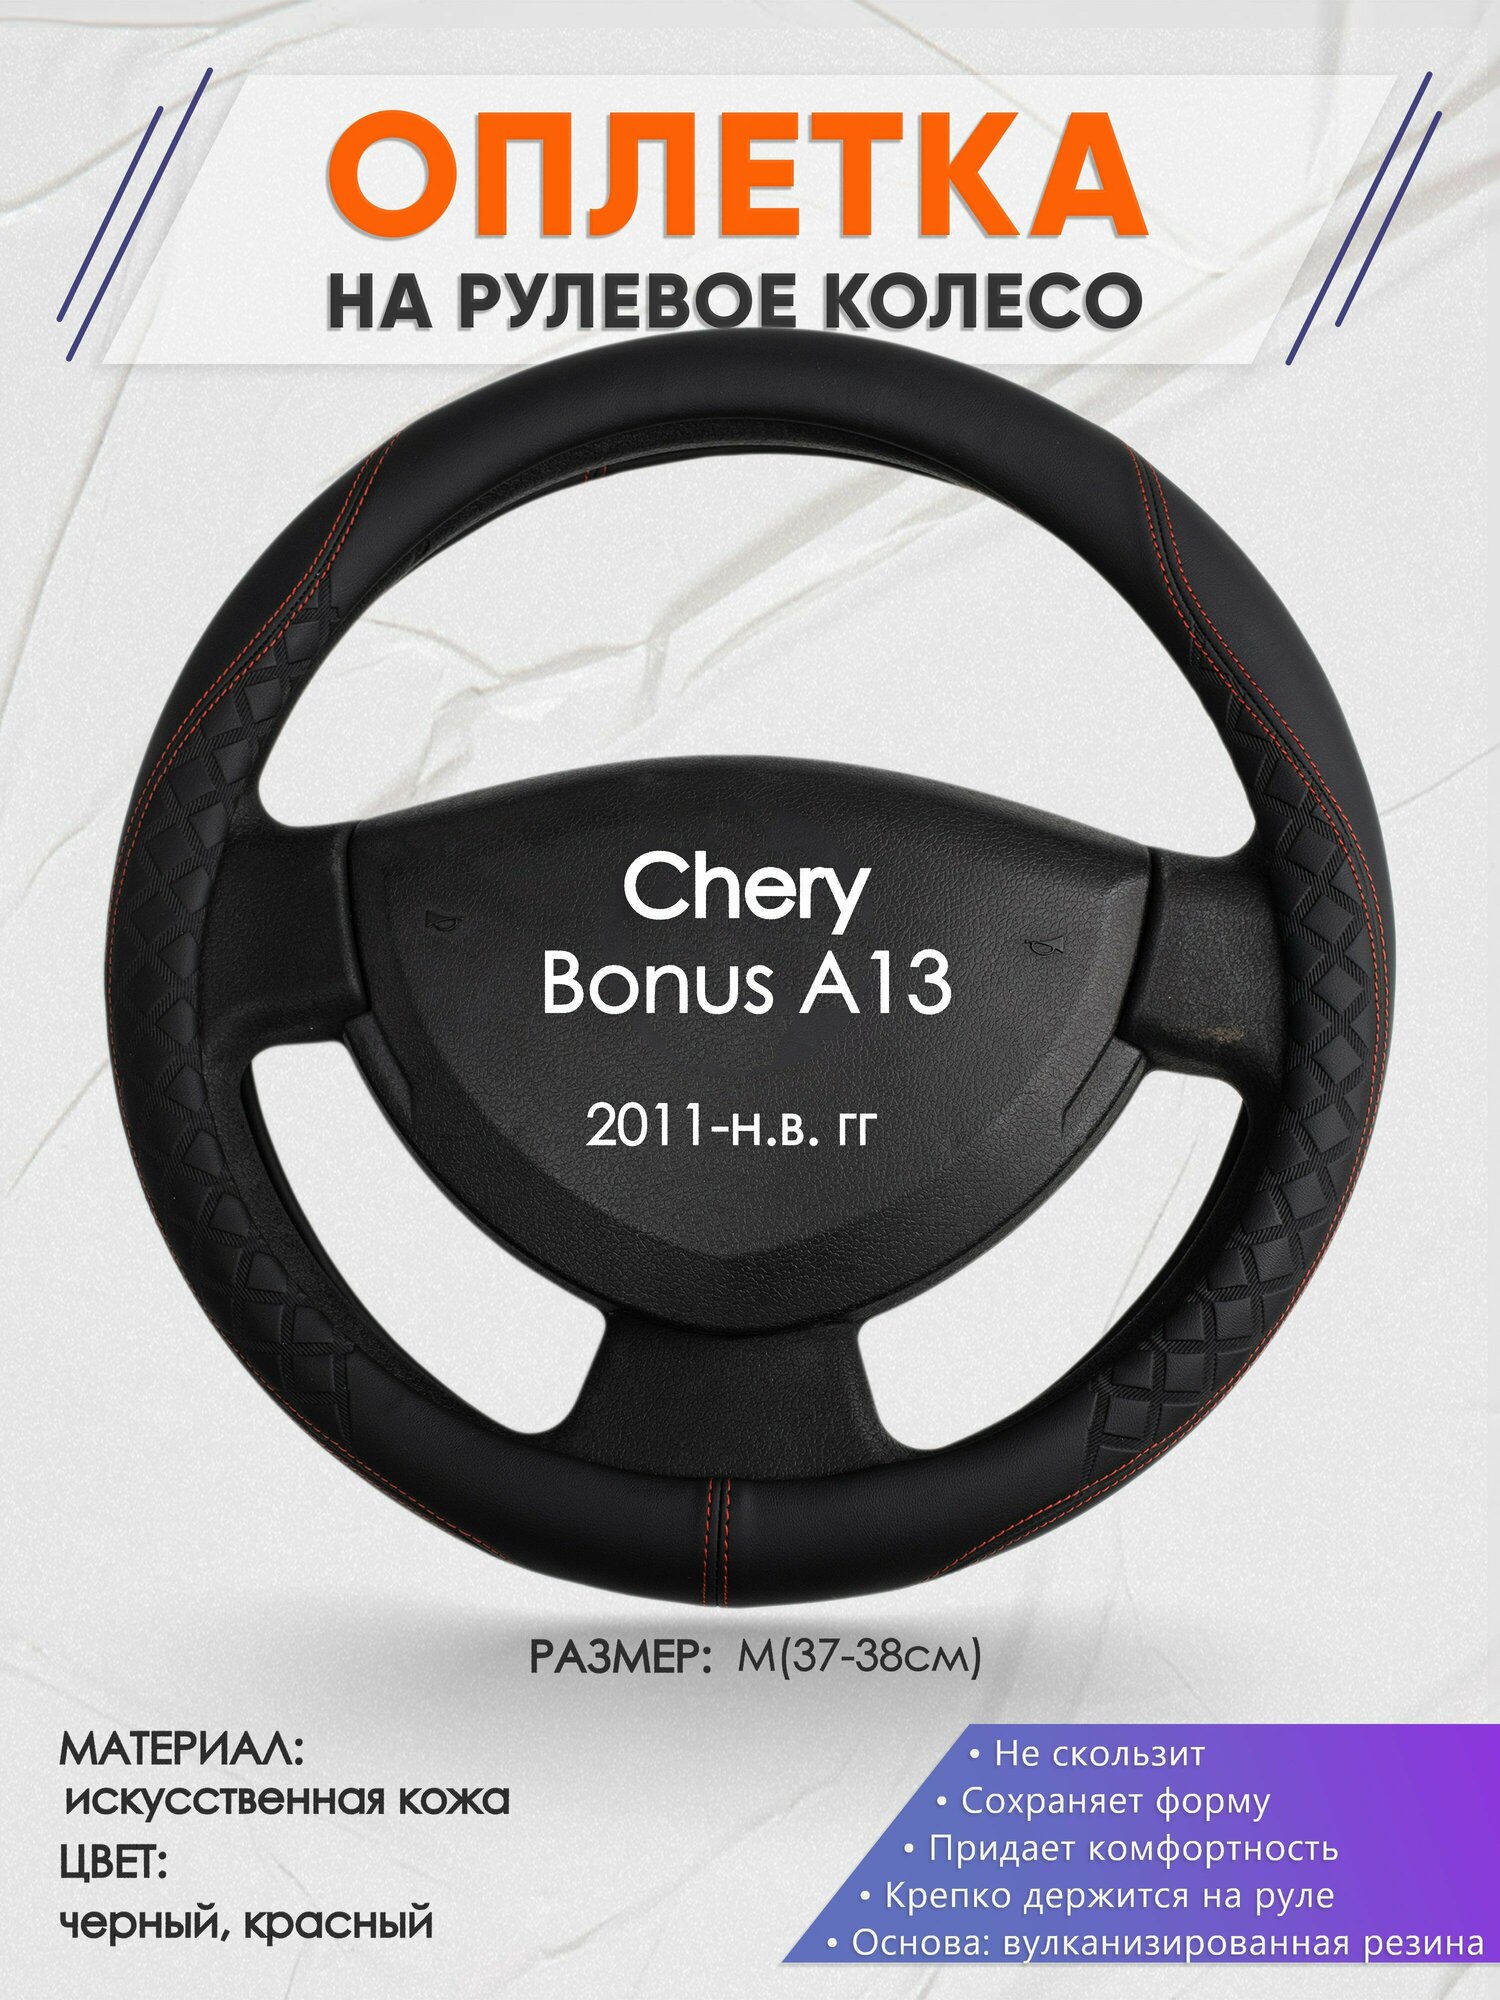 Оплетка на руль для Chery Bonus A13(Чери Бонус А13) 2011-н. в, M(37-38см), Искусственная кожа 70